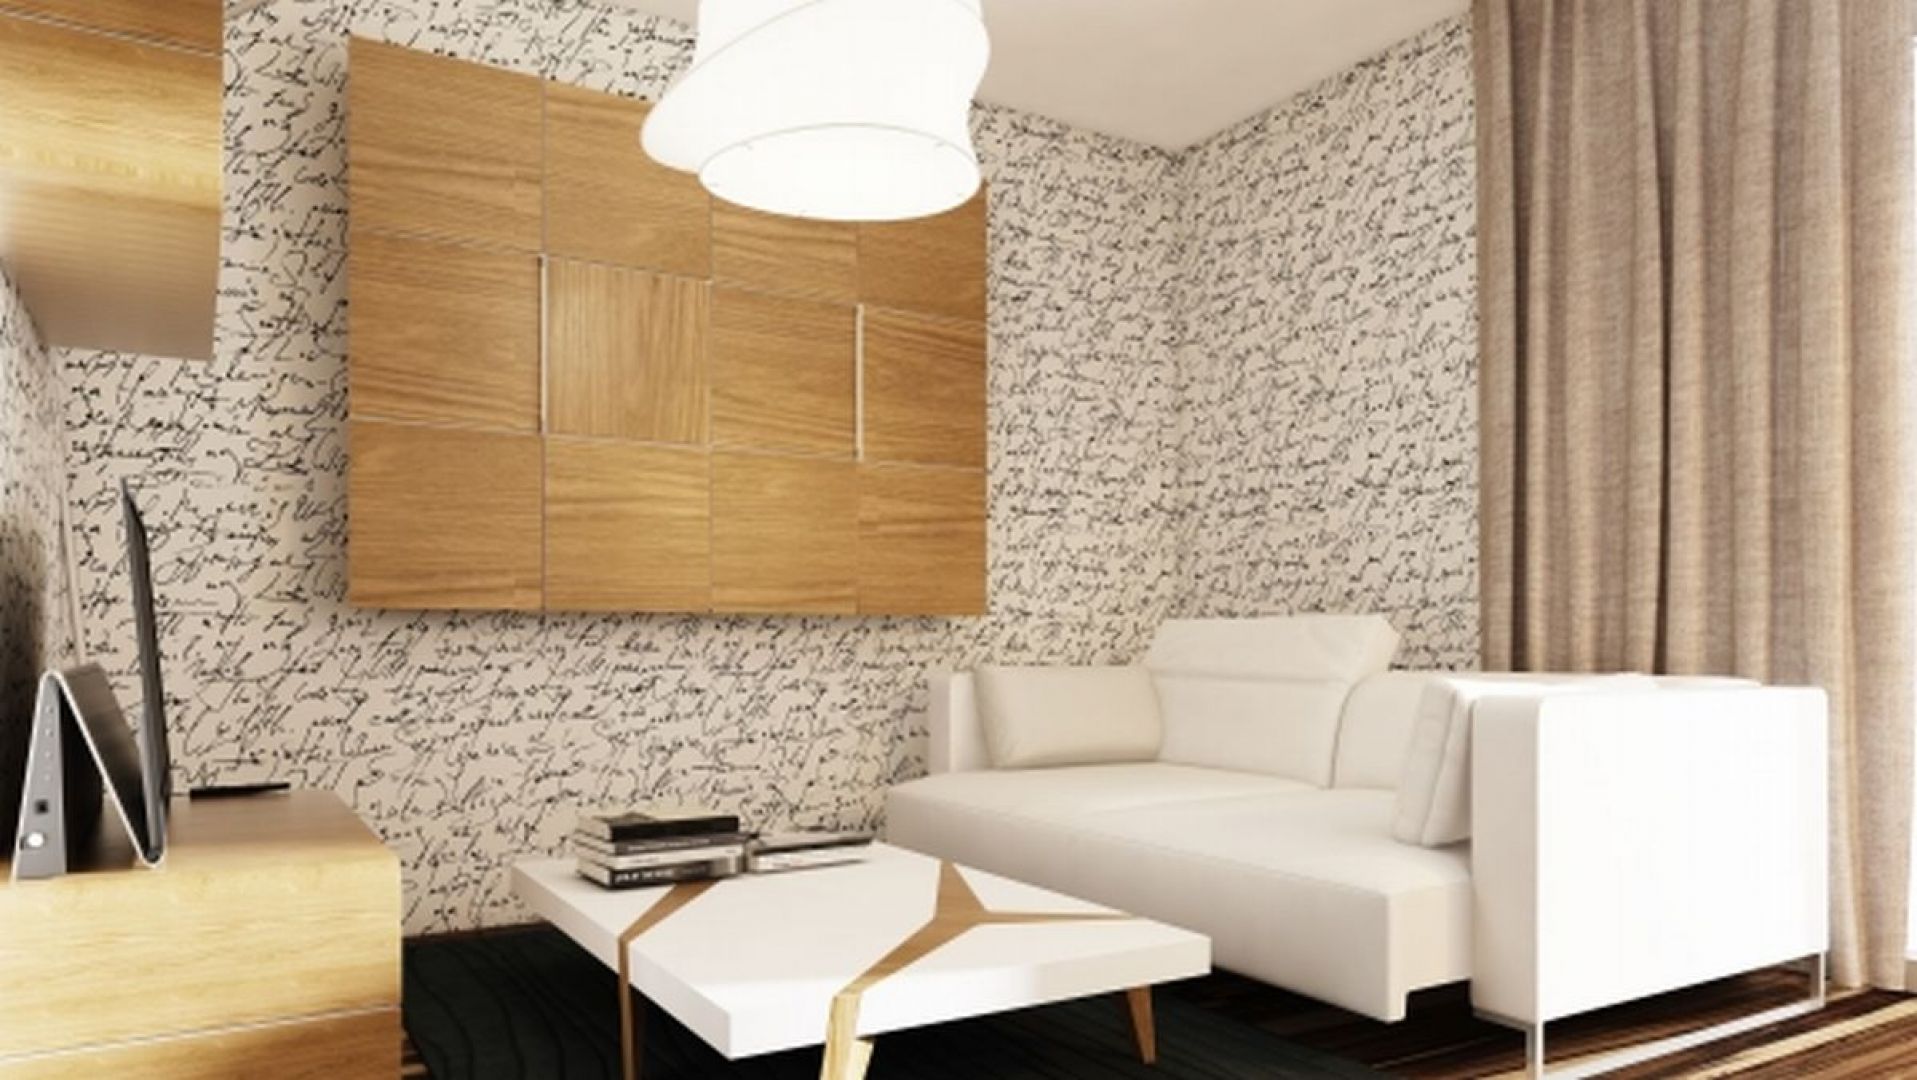 Jasne meble i ściany uzupełnione drewnianymi dekoracjami to kolejny pomysł na urządzenie mikro apartamentu. Fot. Dolcan Plus